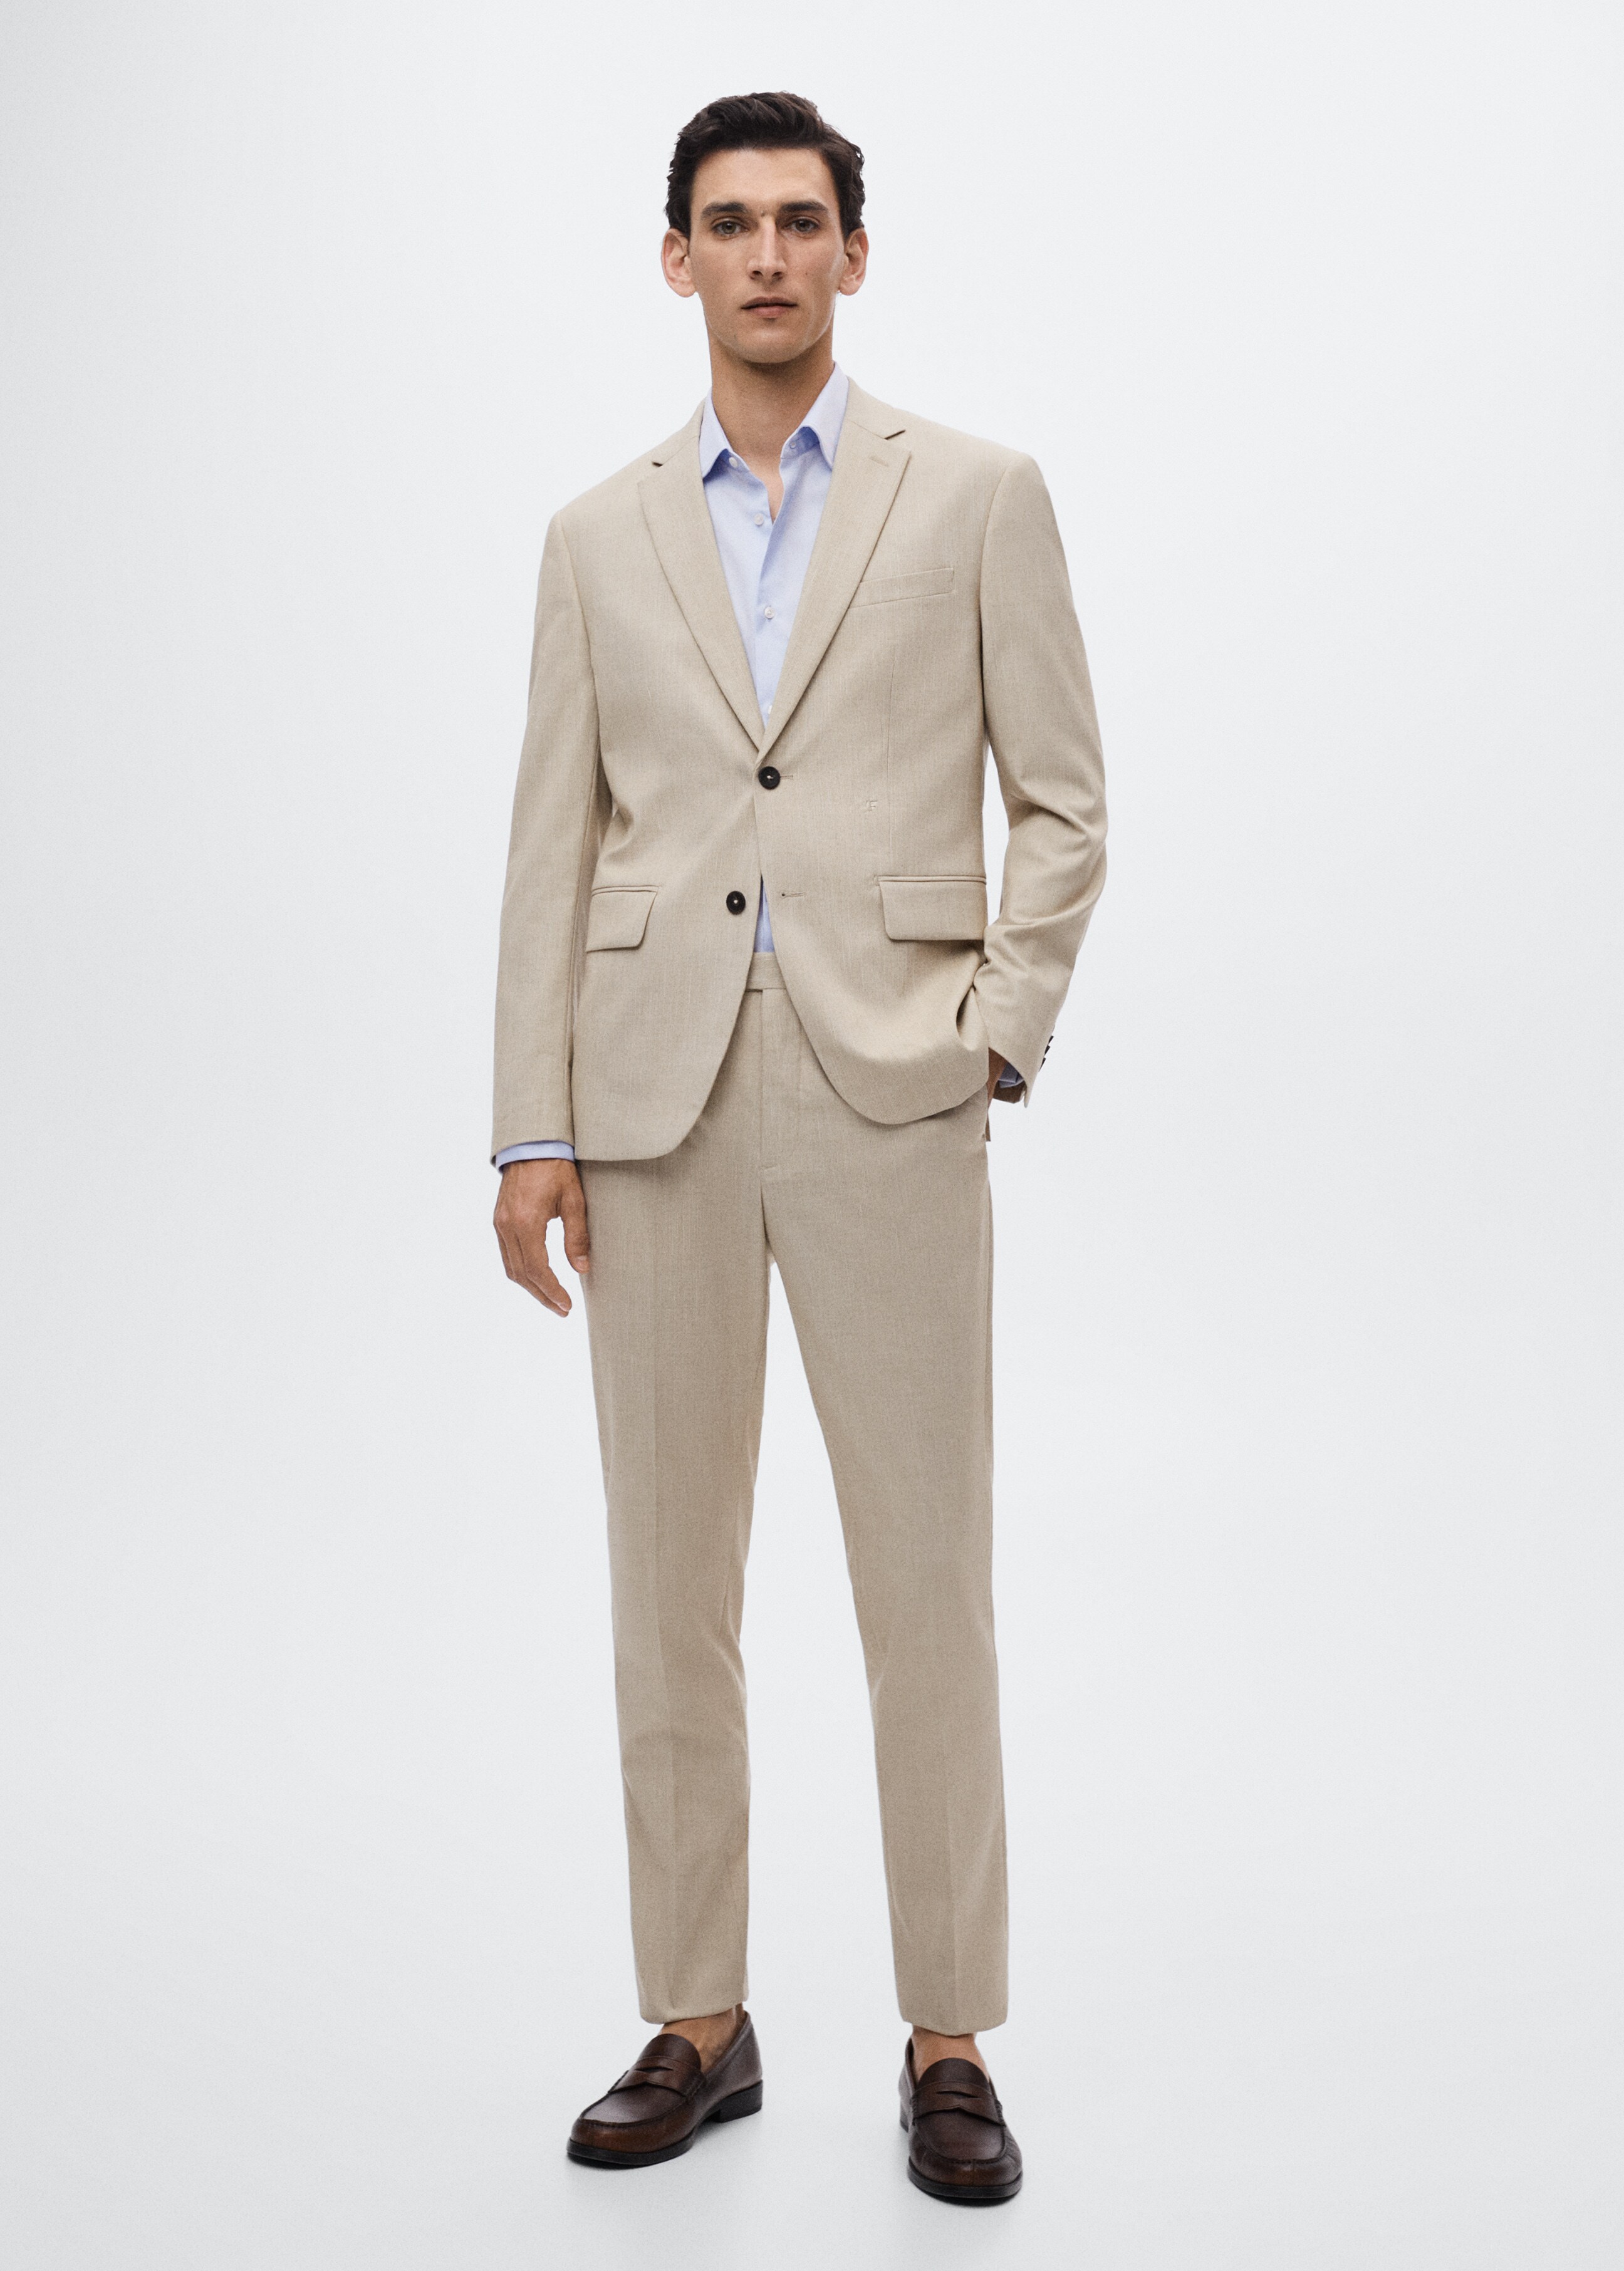 Slim fit cotton suit shirt - General plane